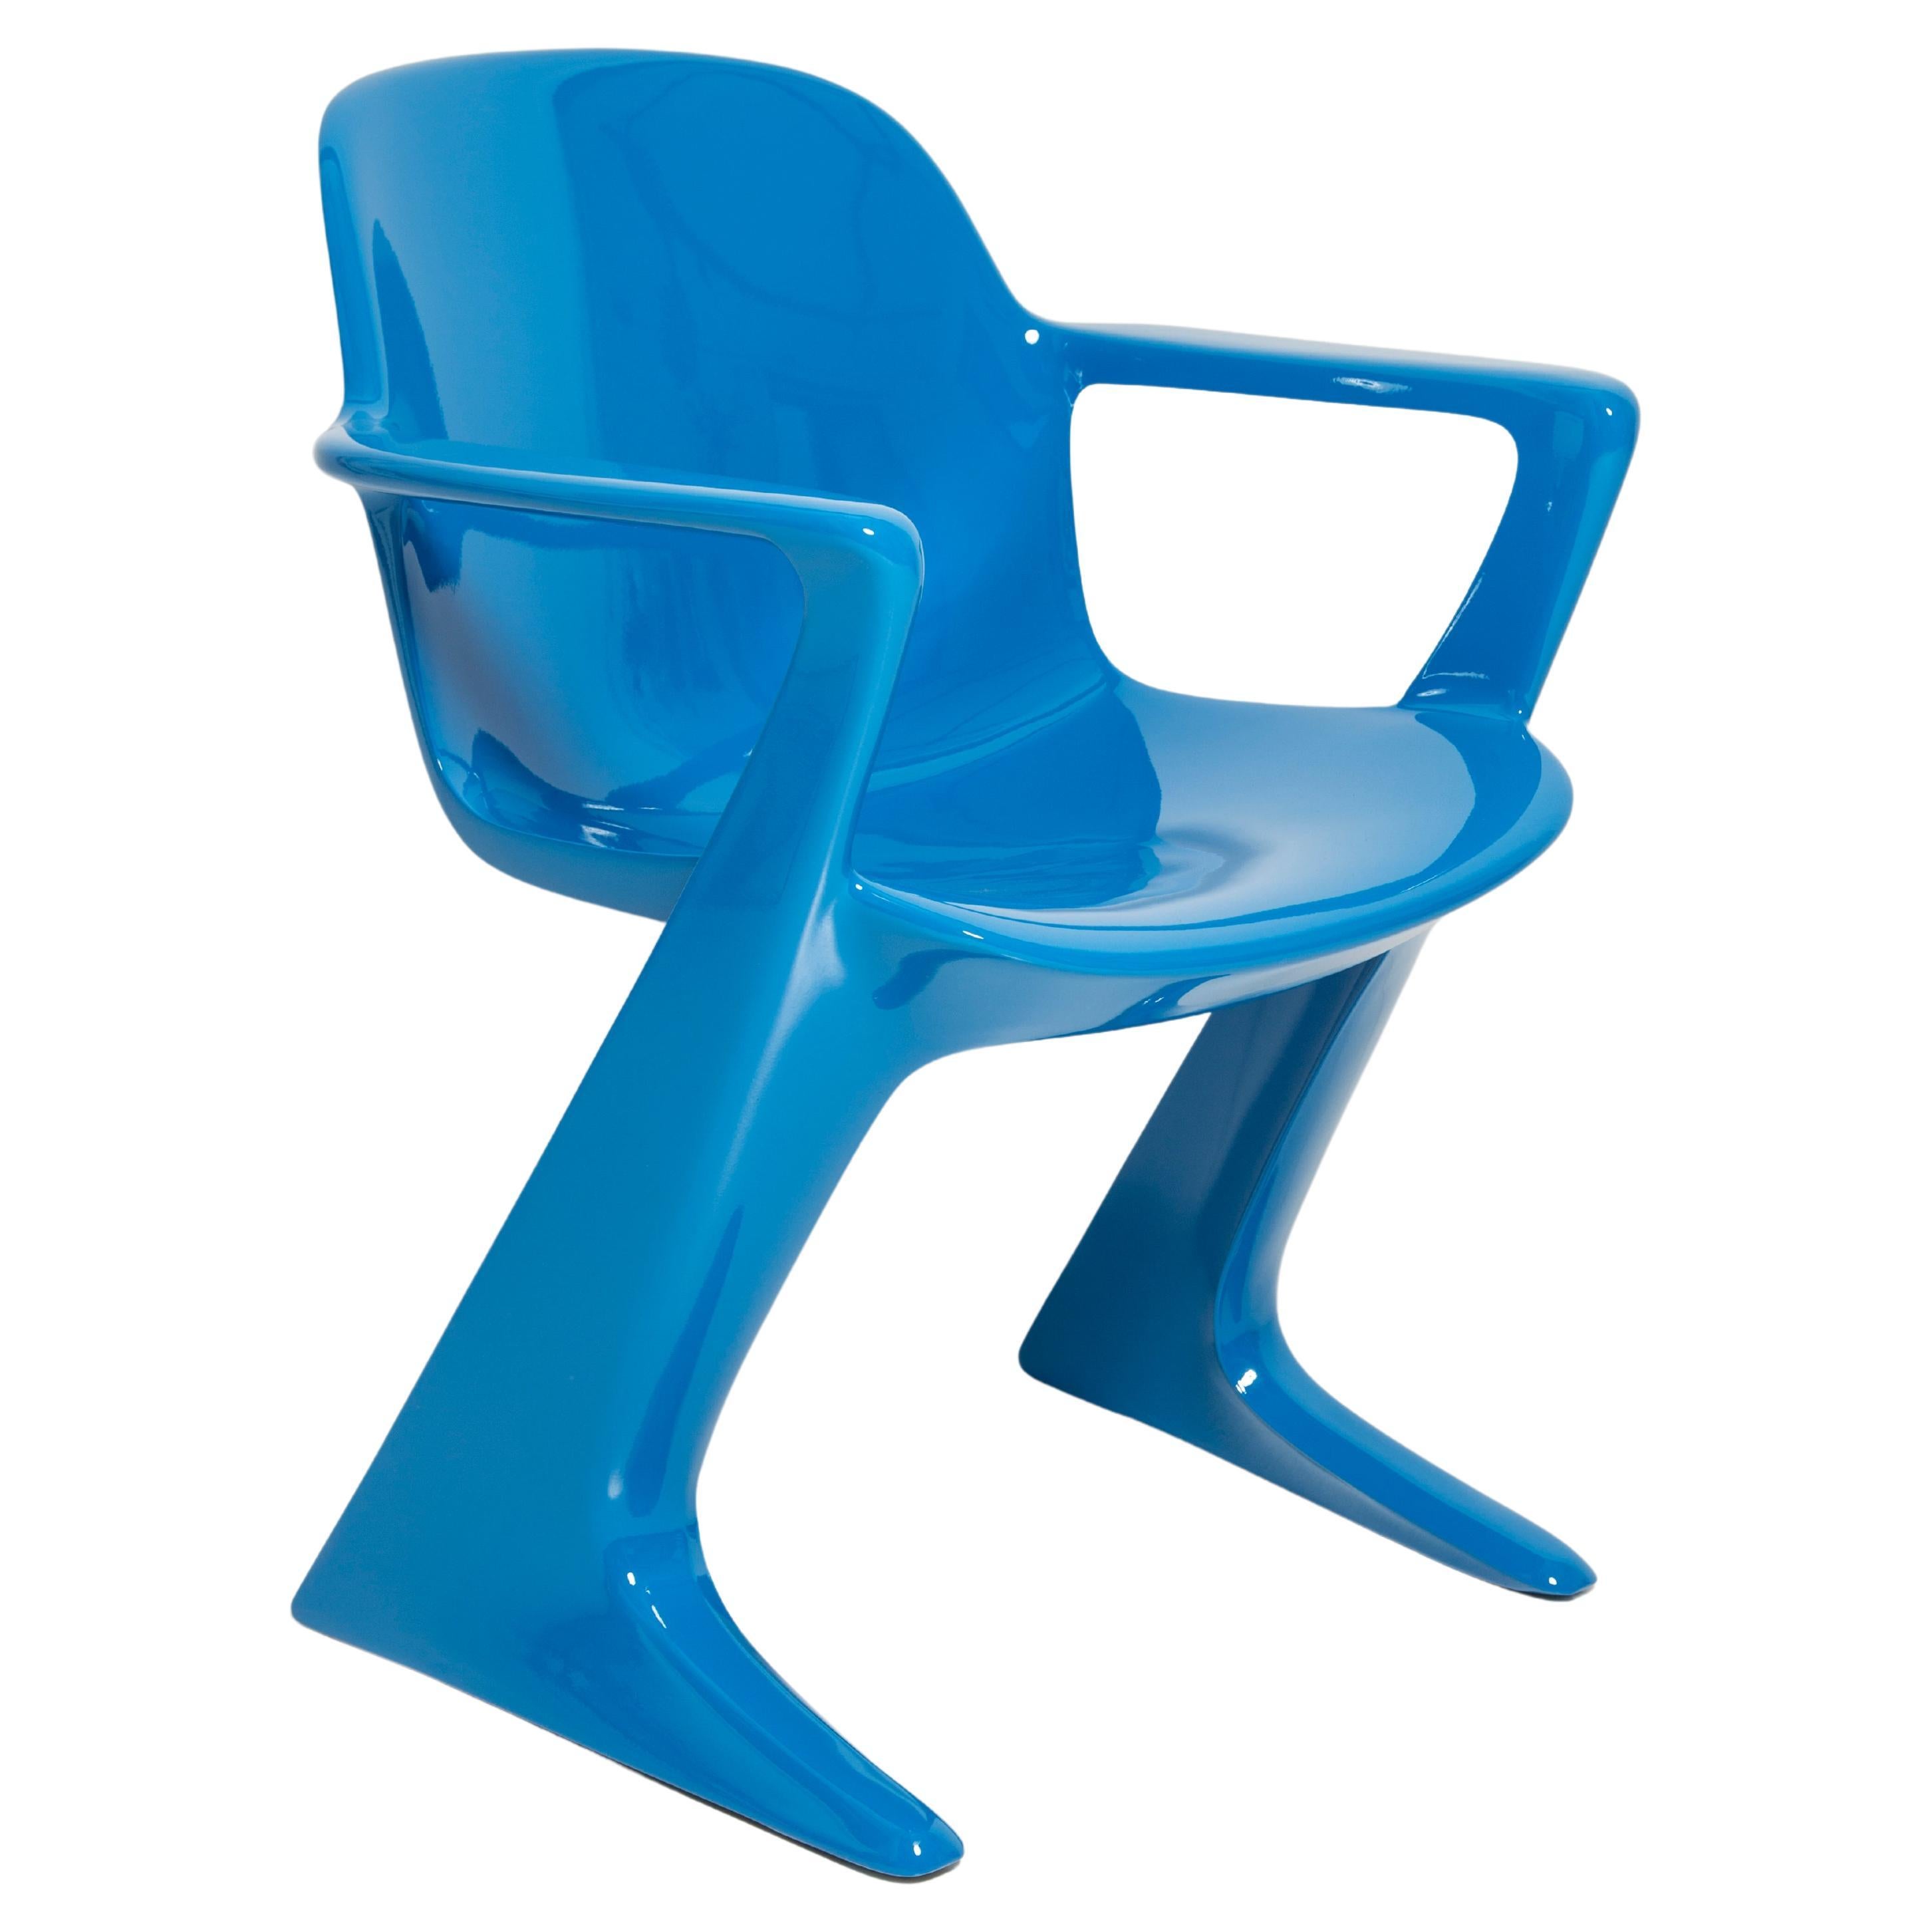 Blauer Kangaroo-Stuhl entworfen von Ernst Moeckl, Deutschland, 1968